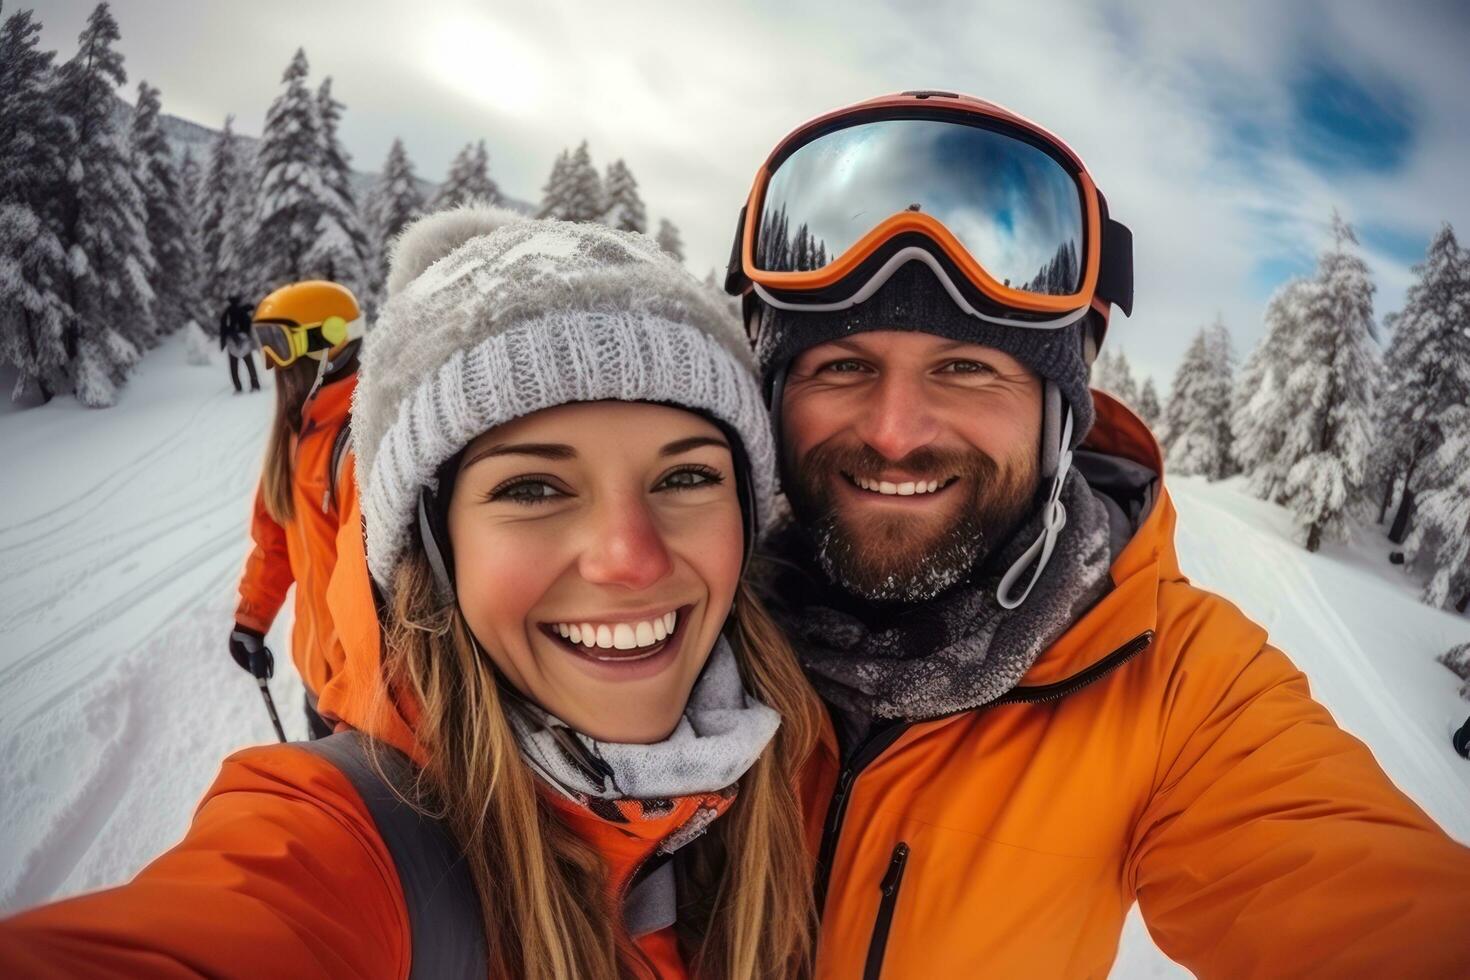 in besneeuwd weer winter skiën seizoen snowboarders gelukkig voor selfies winter foto